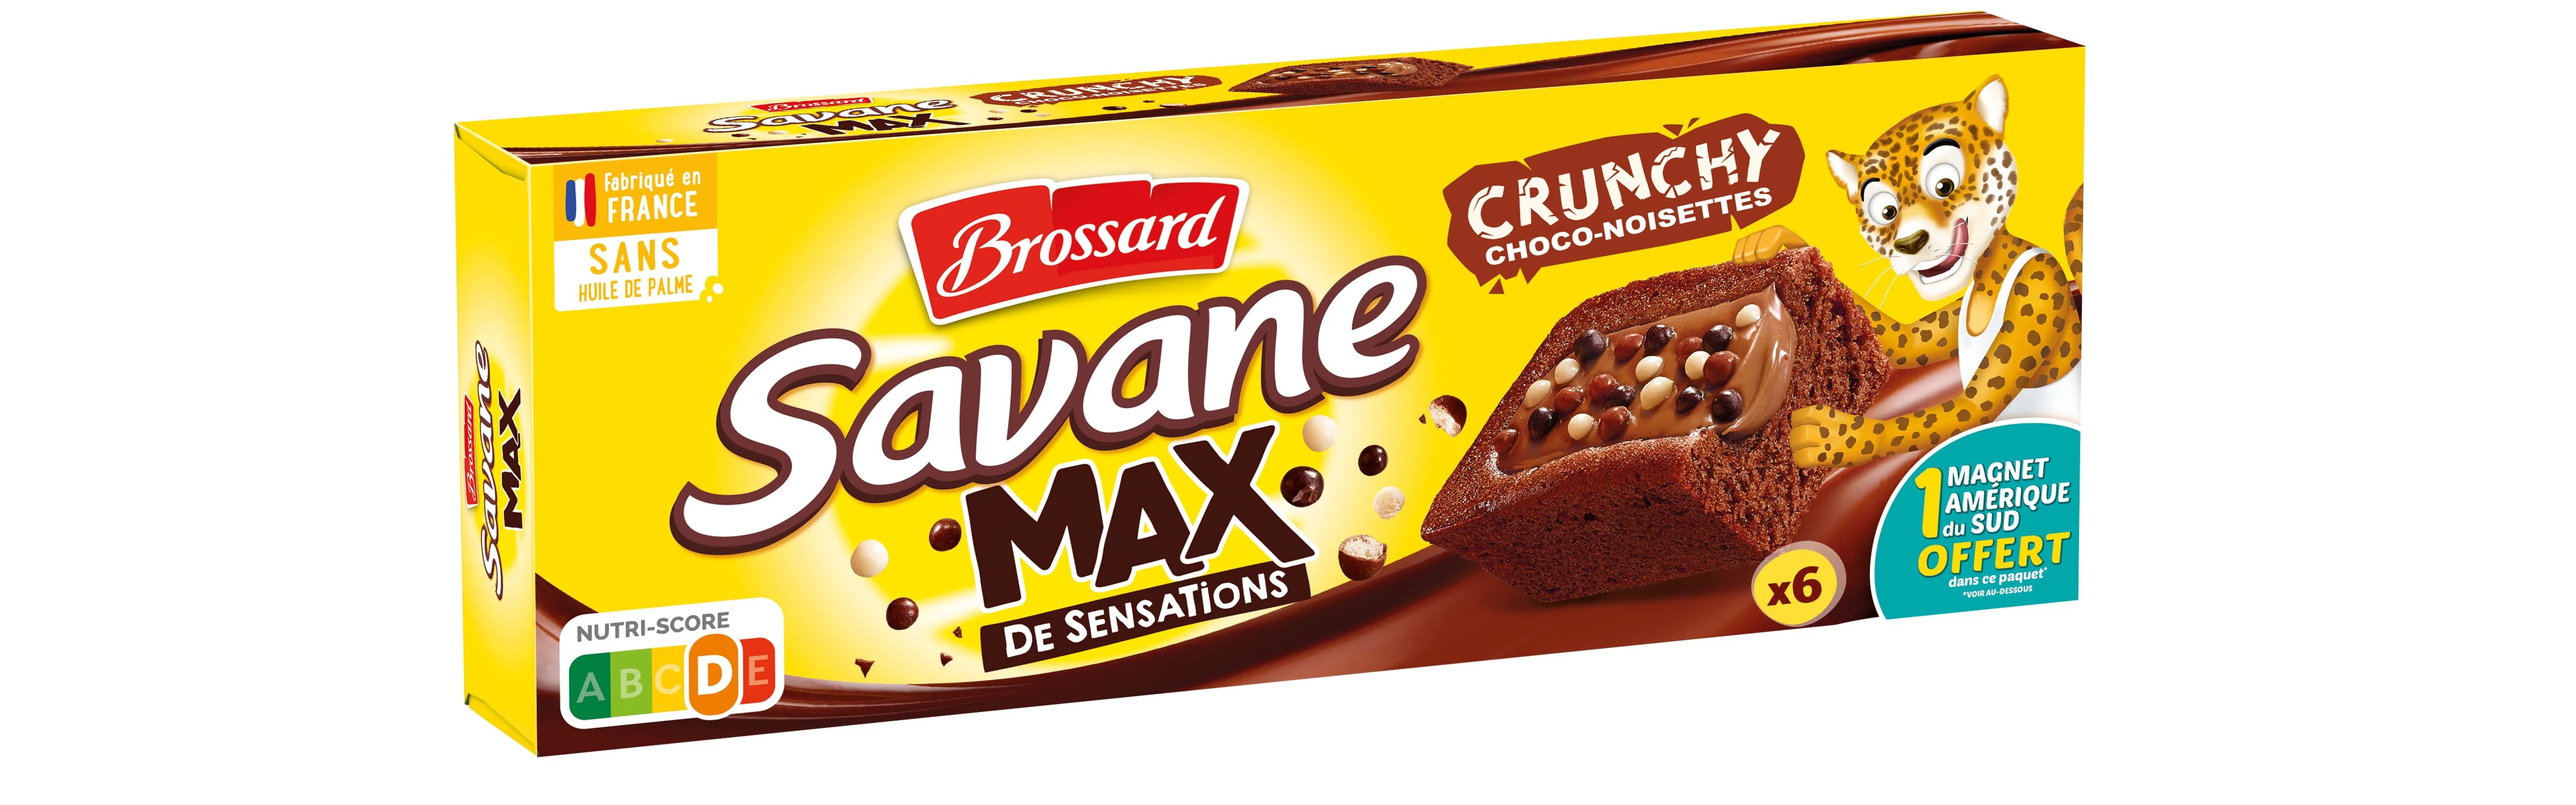 Savane Max Croccante X 6 180g